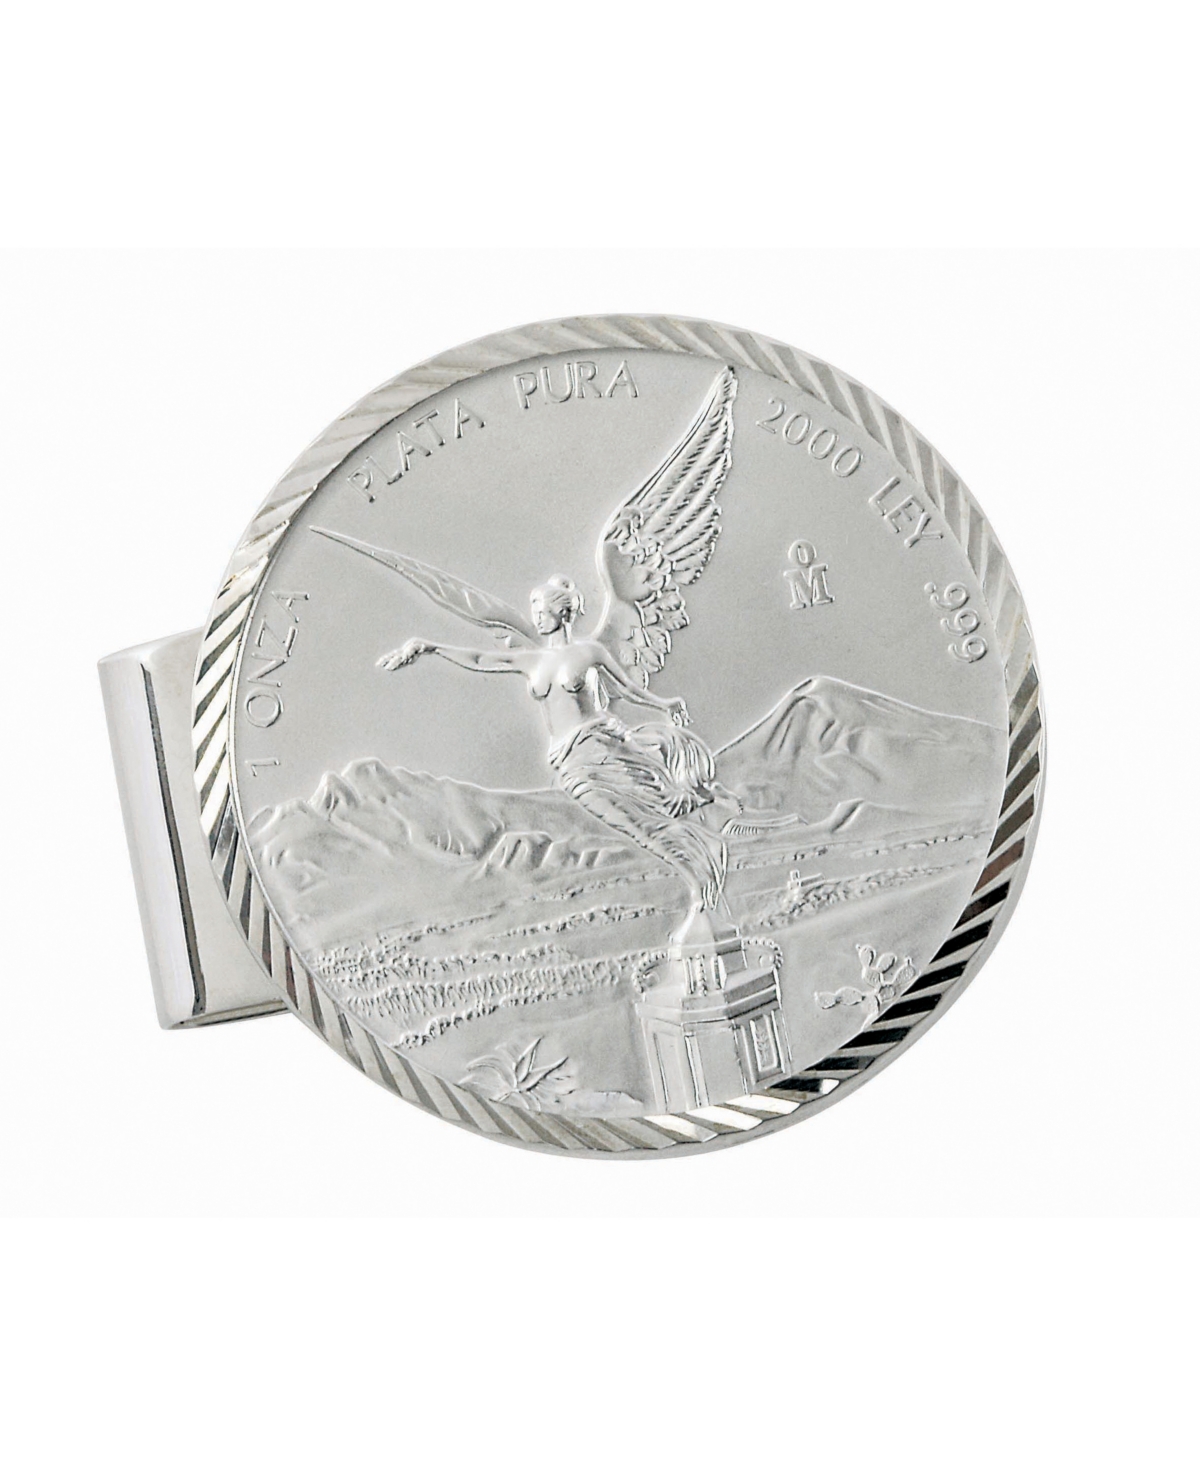 American Coin Treasures Men's American Coin Treasures Sterling Silver Diamond Cut Coin Money Clip with Mexican Libertad 1 Oz Silver Coin